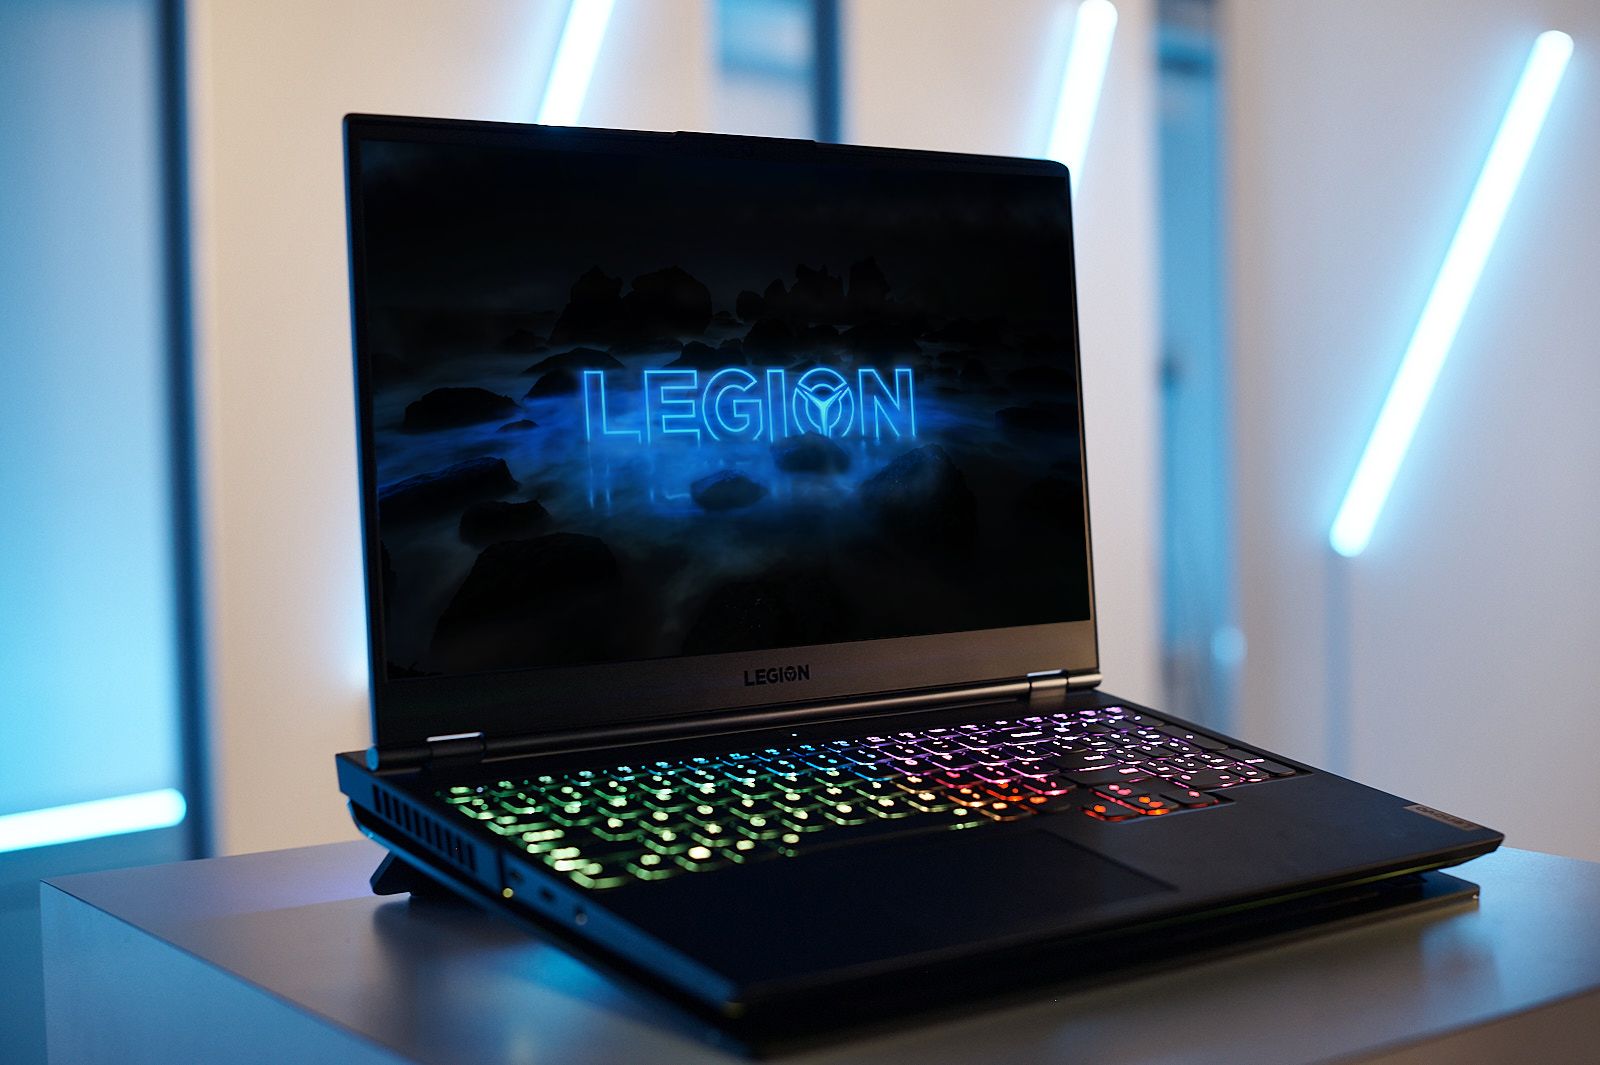 The NEW Lenovo LEGION Laptops! 